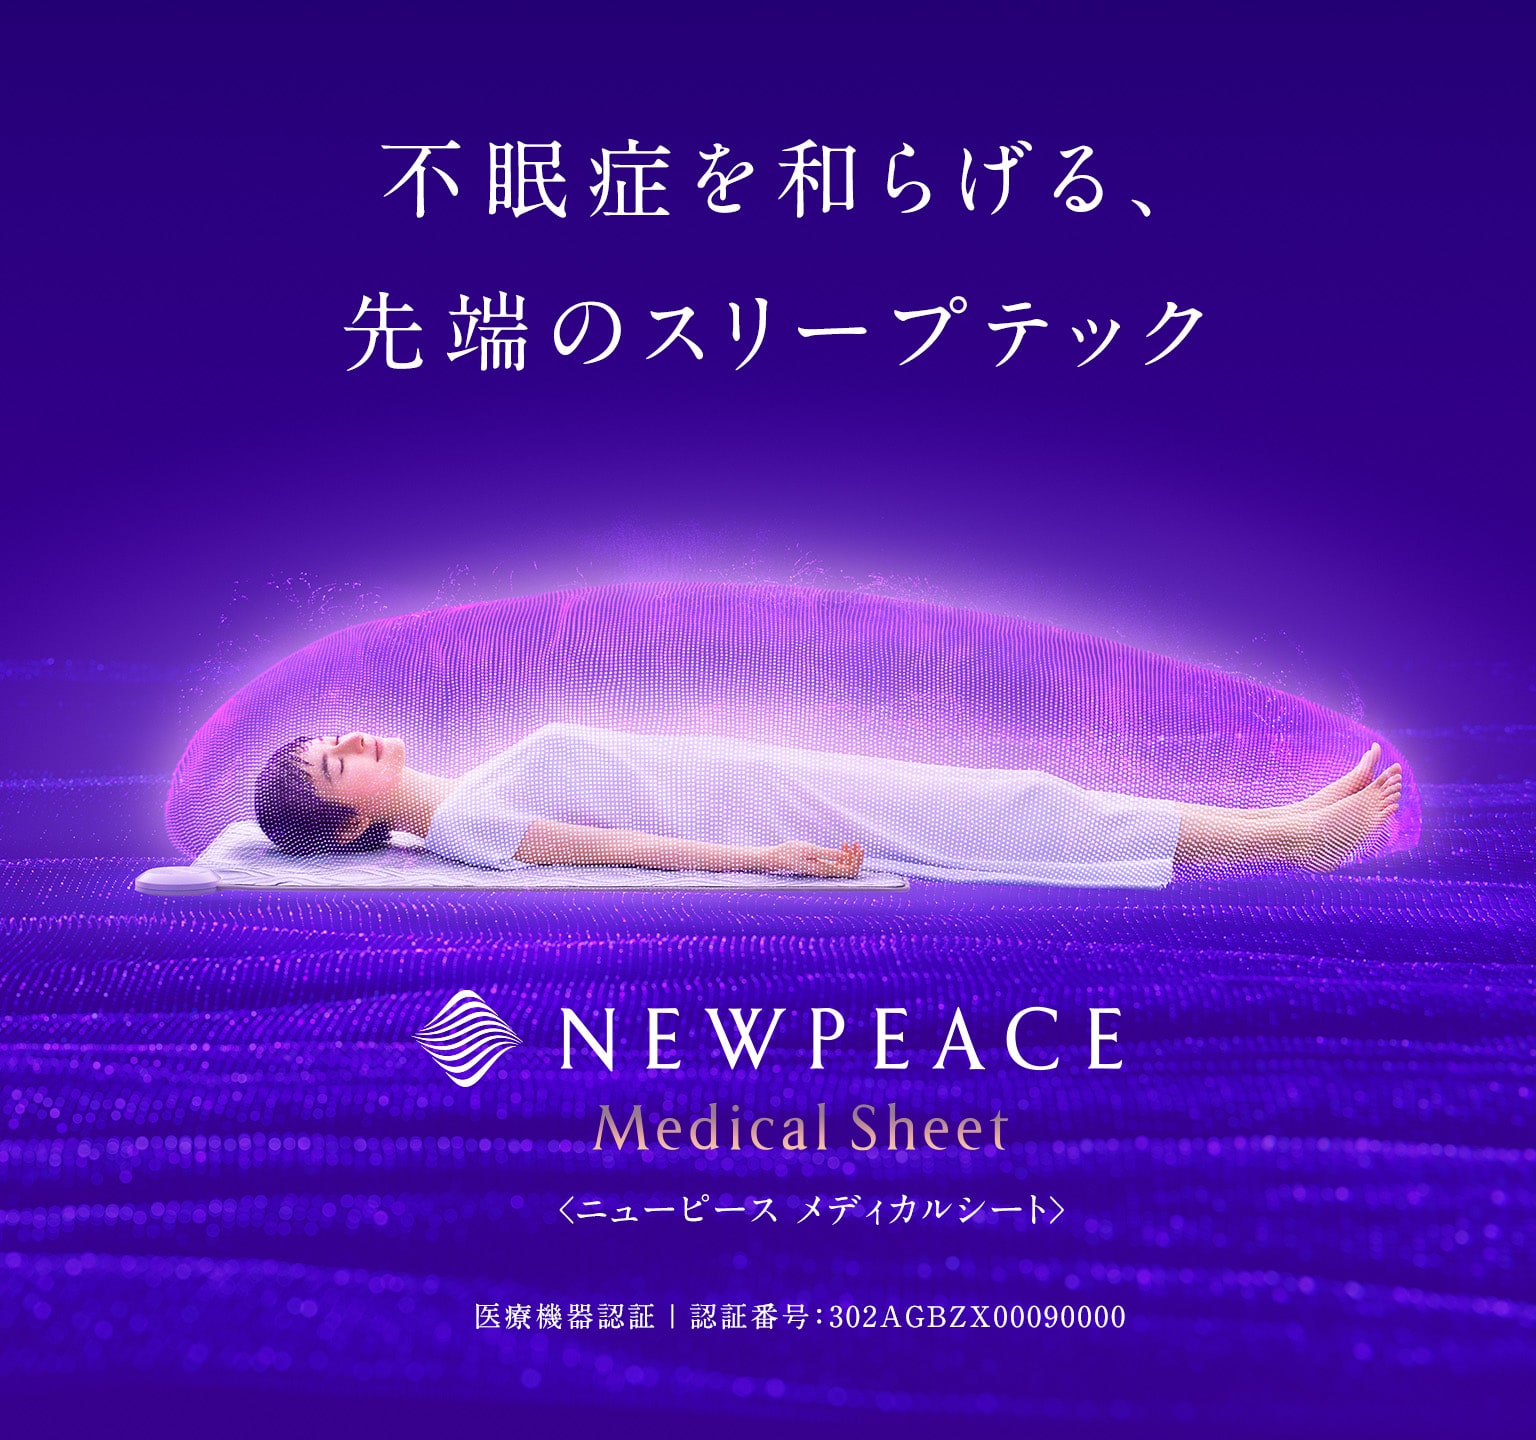 日本の、不眠に。月々600円※ではじめる不眠症対策 NEWPEACE Medical Sheet